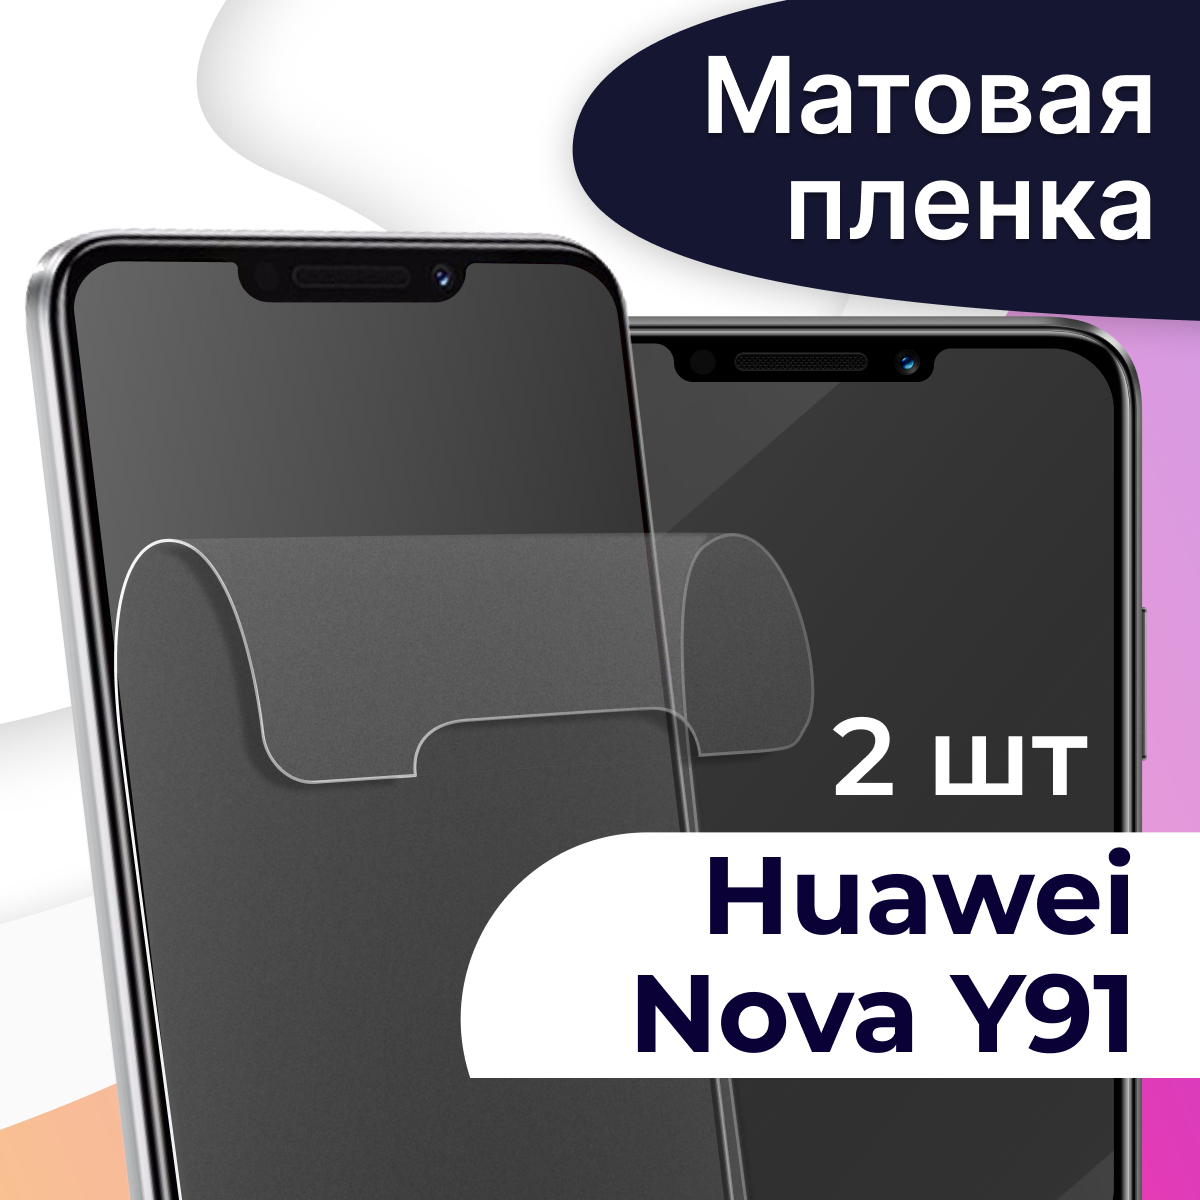 Матовая пленка на телефон Huawei Nova Y91 / Гидрогелевая противоударная пленка для смартфона Хуавей Нова У91 / Защитная пленка